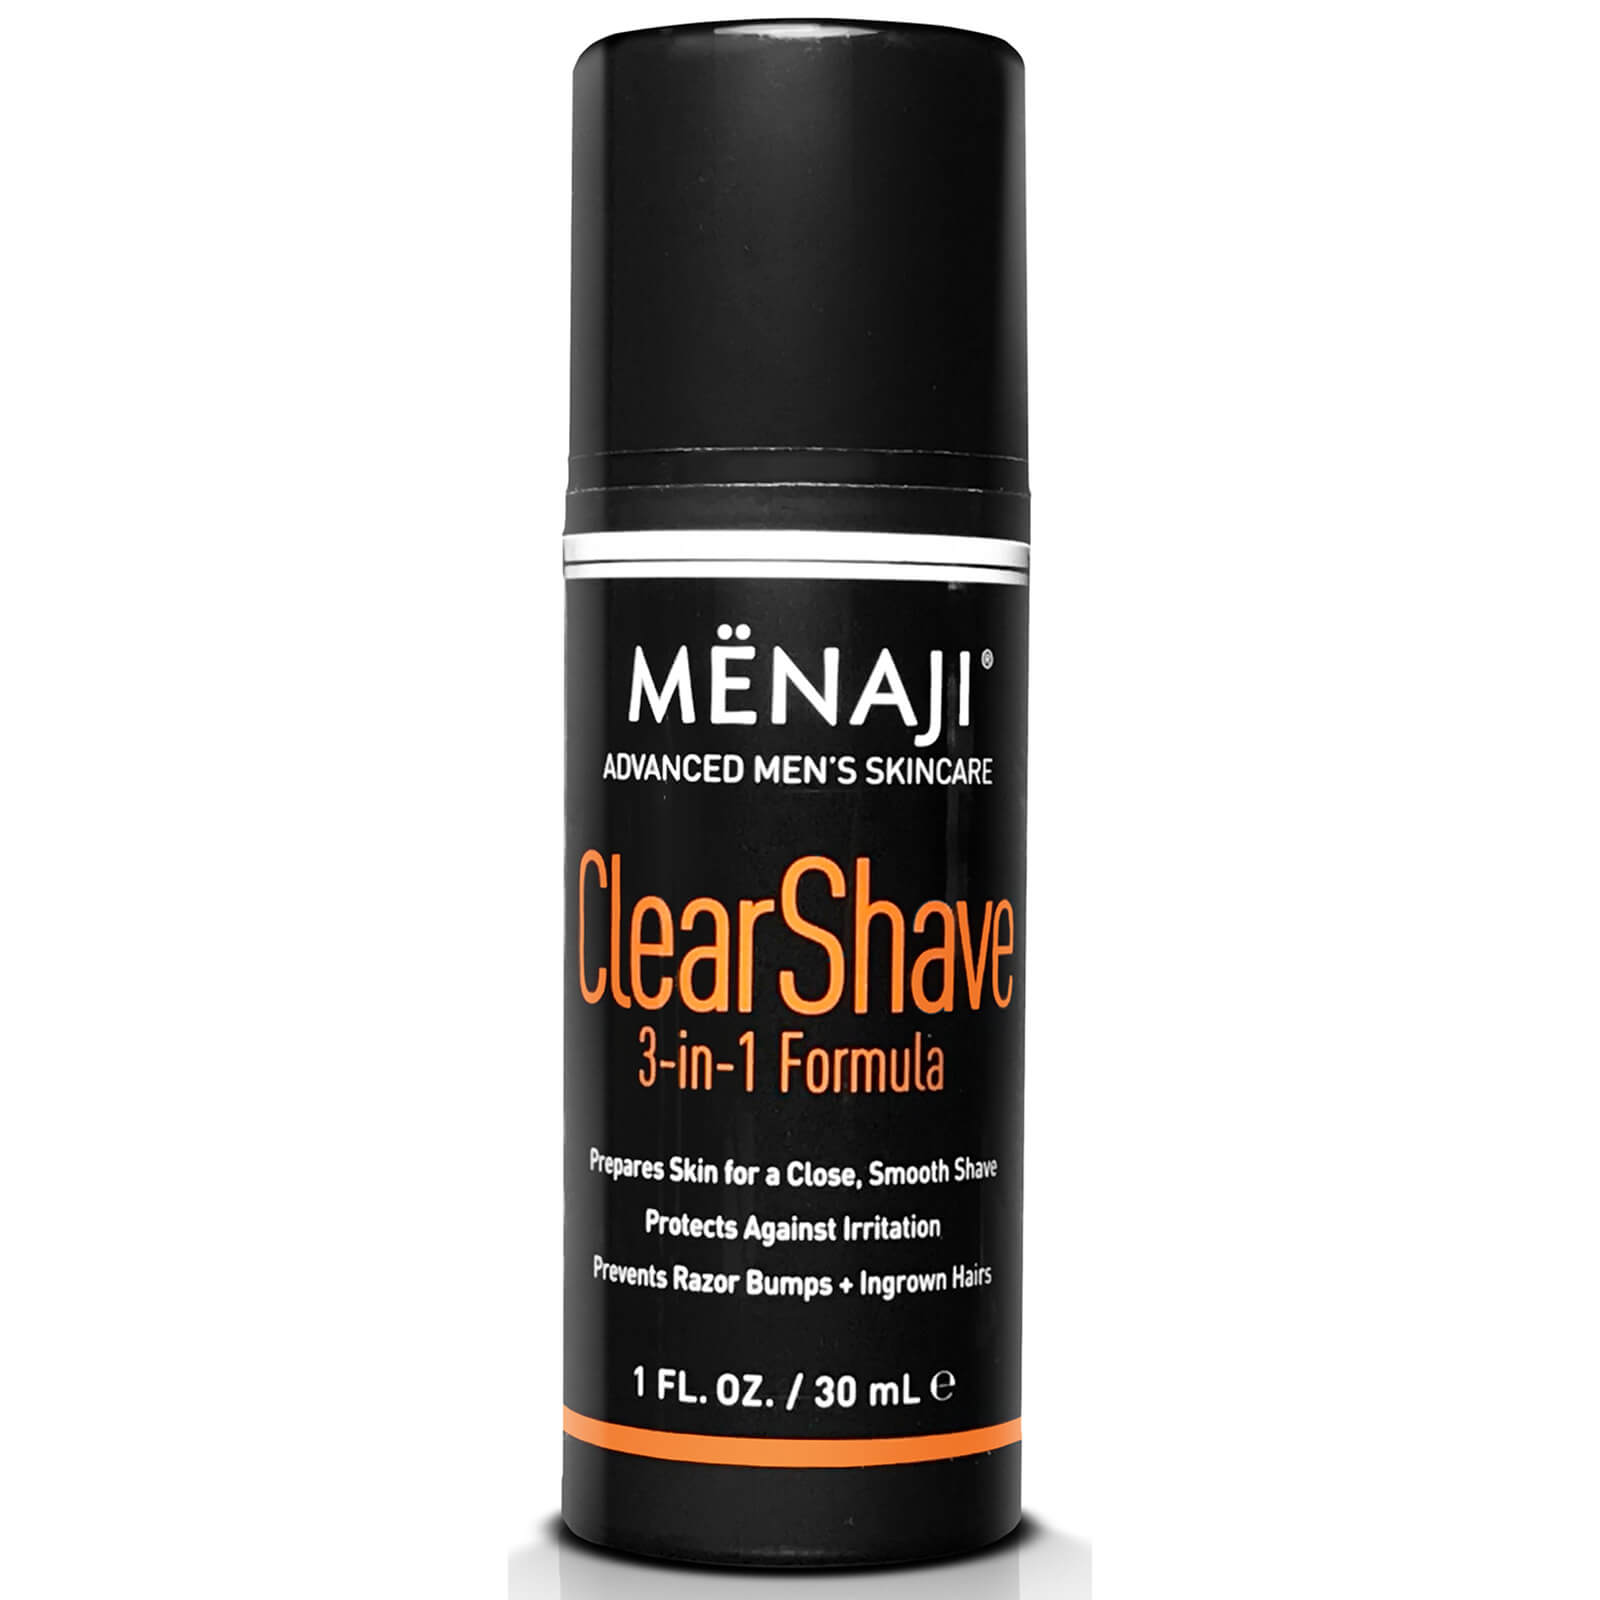 Menaji Clear Shave Shaving Gel 3-in-1 Formula